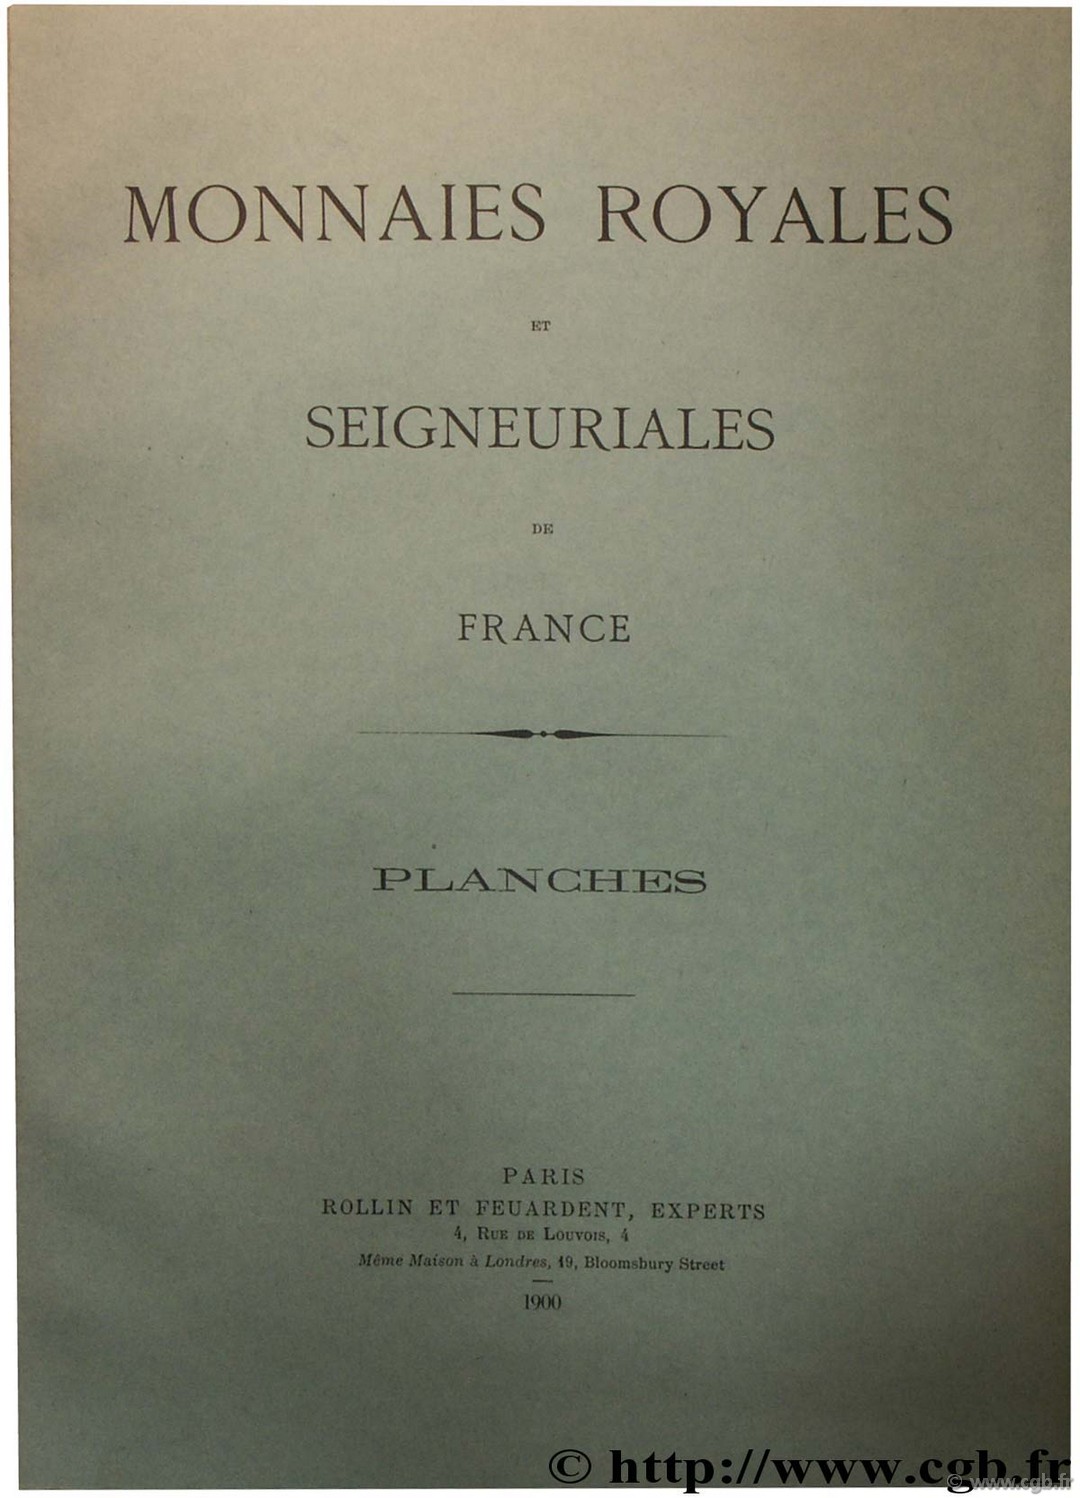 Catalogue des monnaies royales et seigneuriales de France  FEUARDENT F., ROLLIN H.